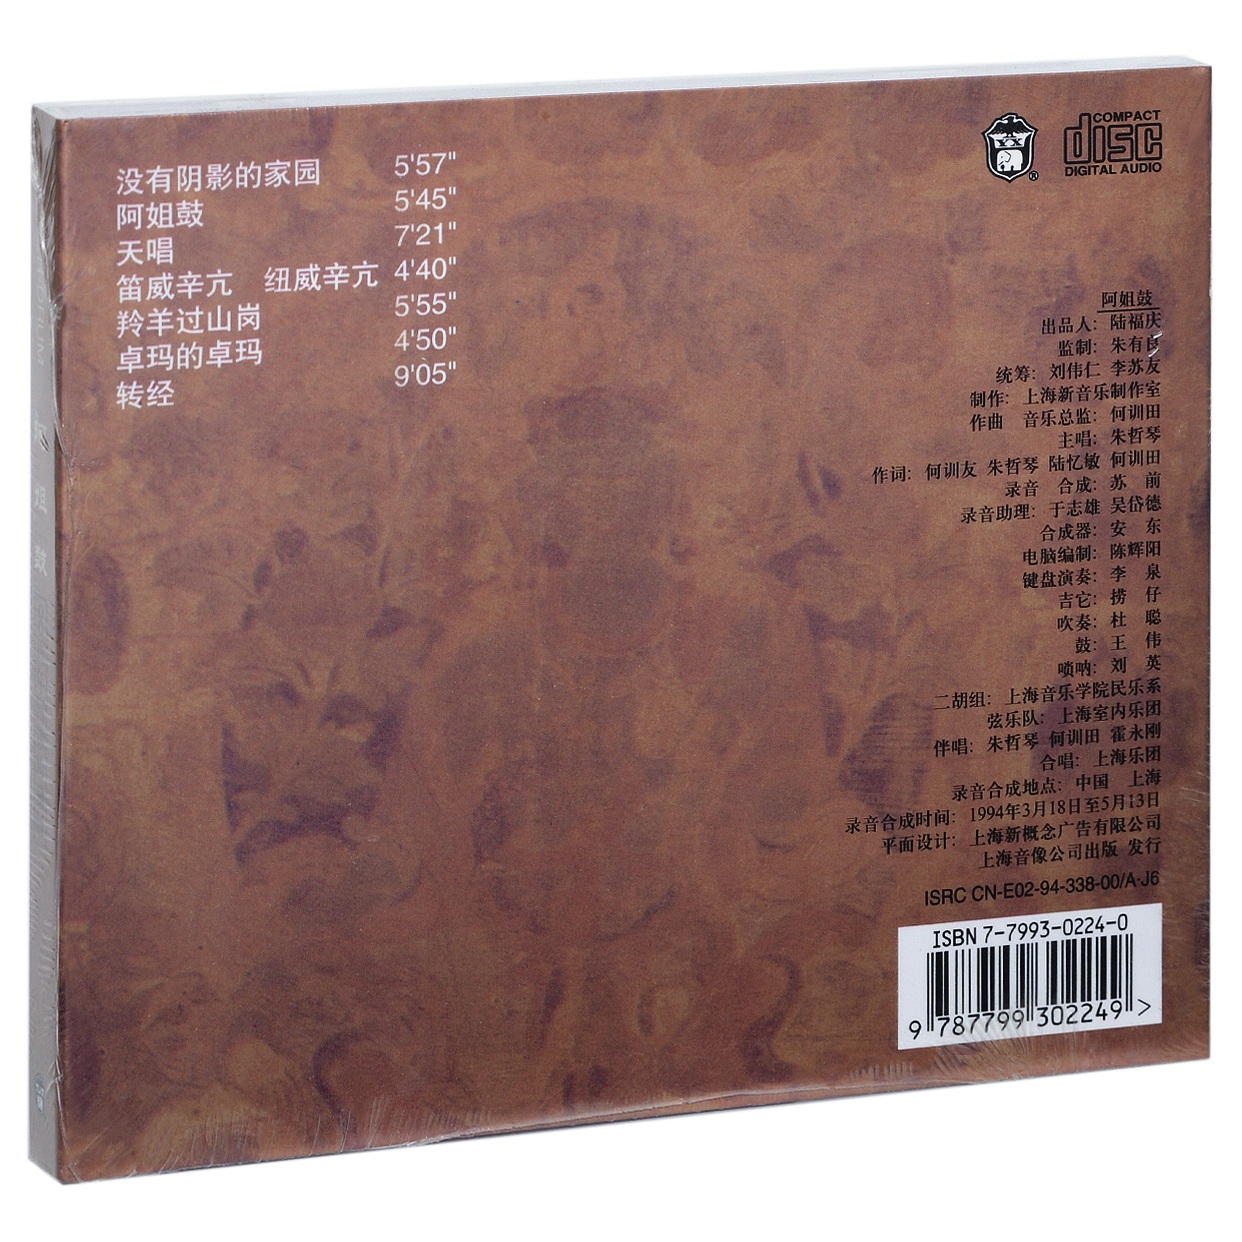 正版朱哲琴阿姐鼓 8周年回馈珍藏版专辑上海音像唱片CD碟片-图0